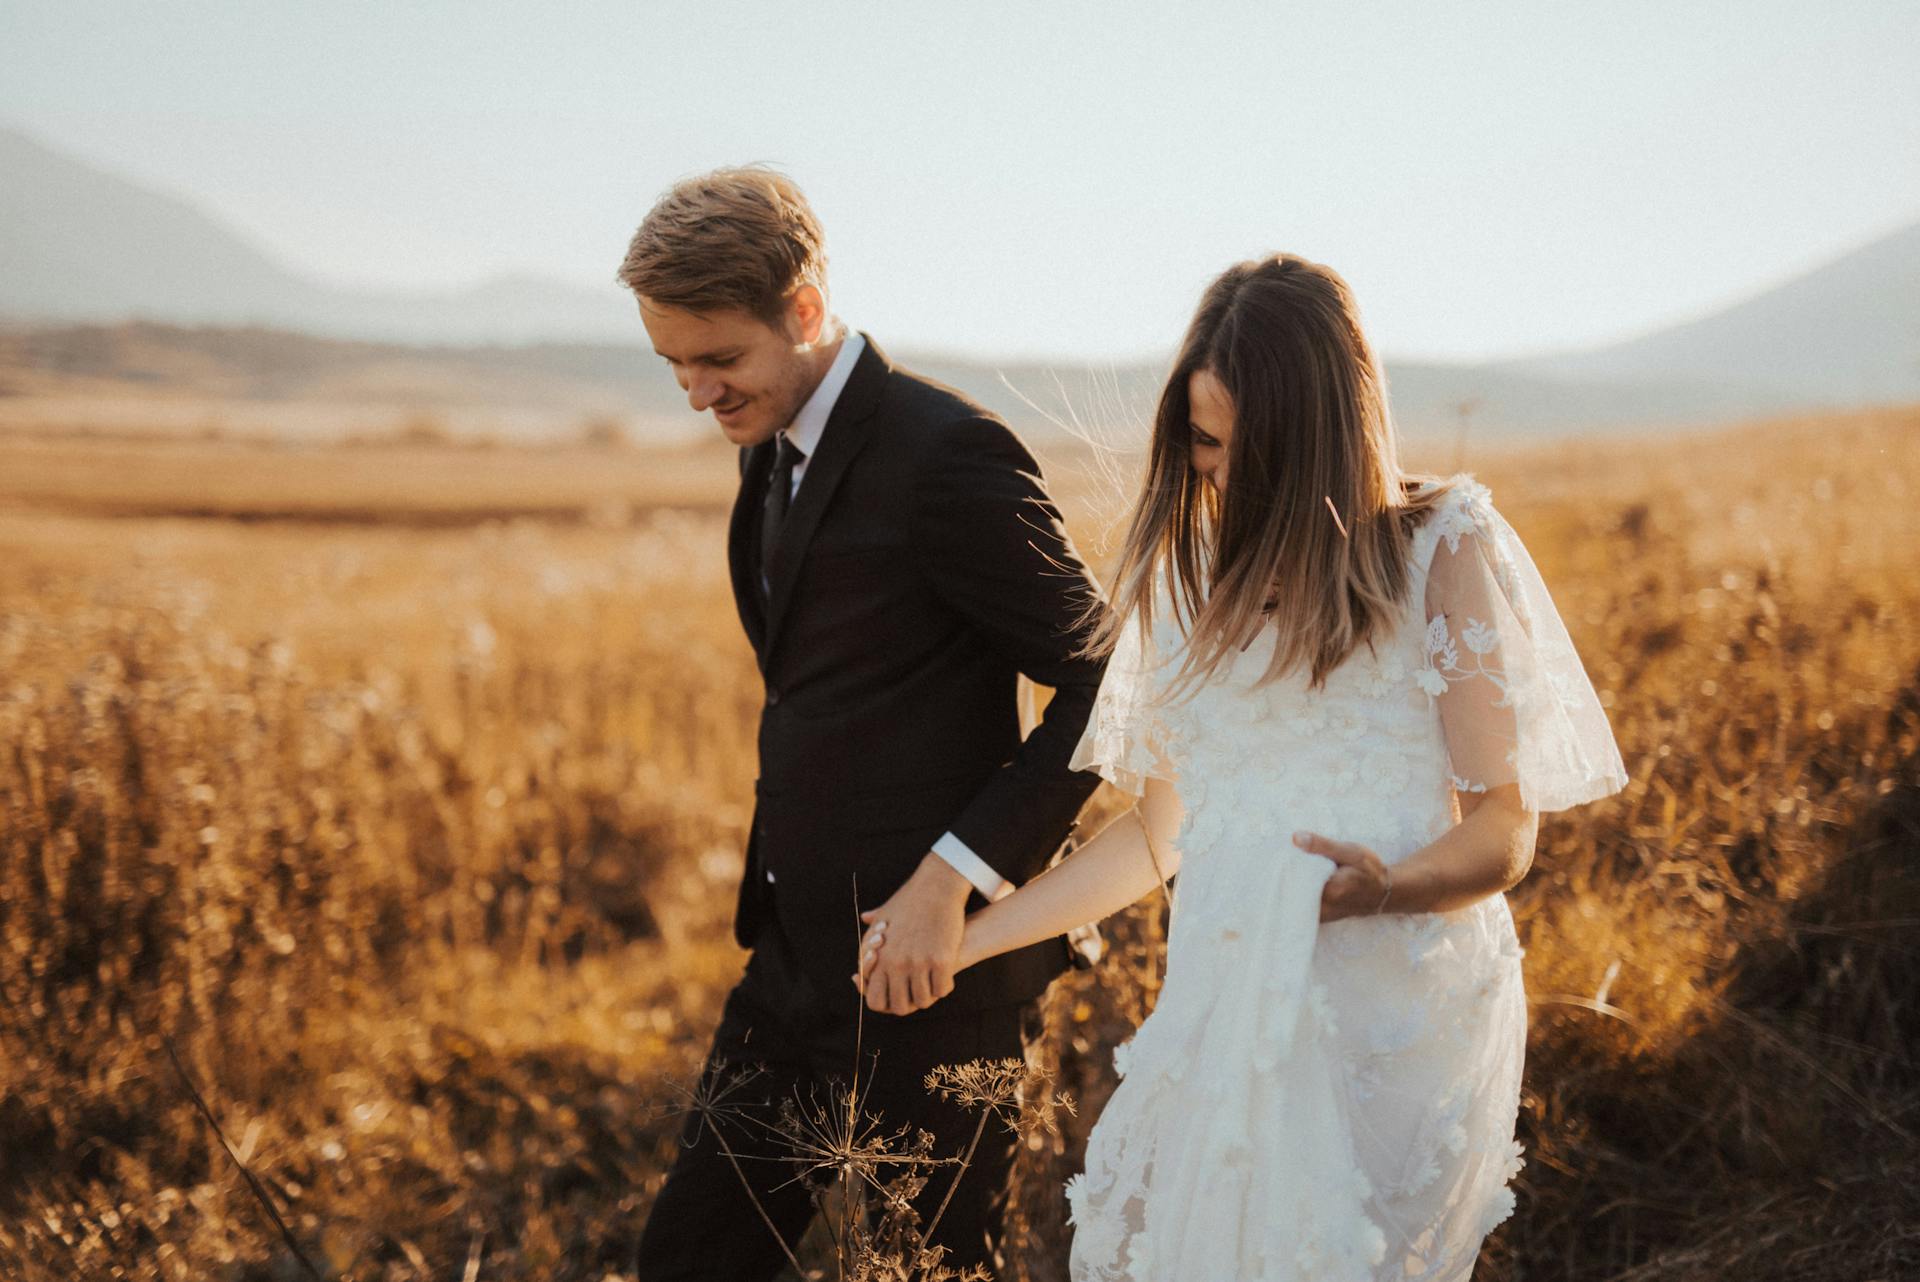 Une mariée et un marié se tenant la main en passant dans un champ | Source : Pexels